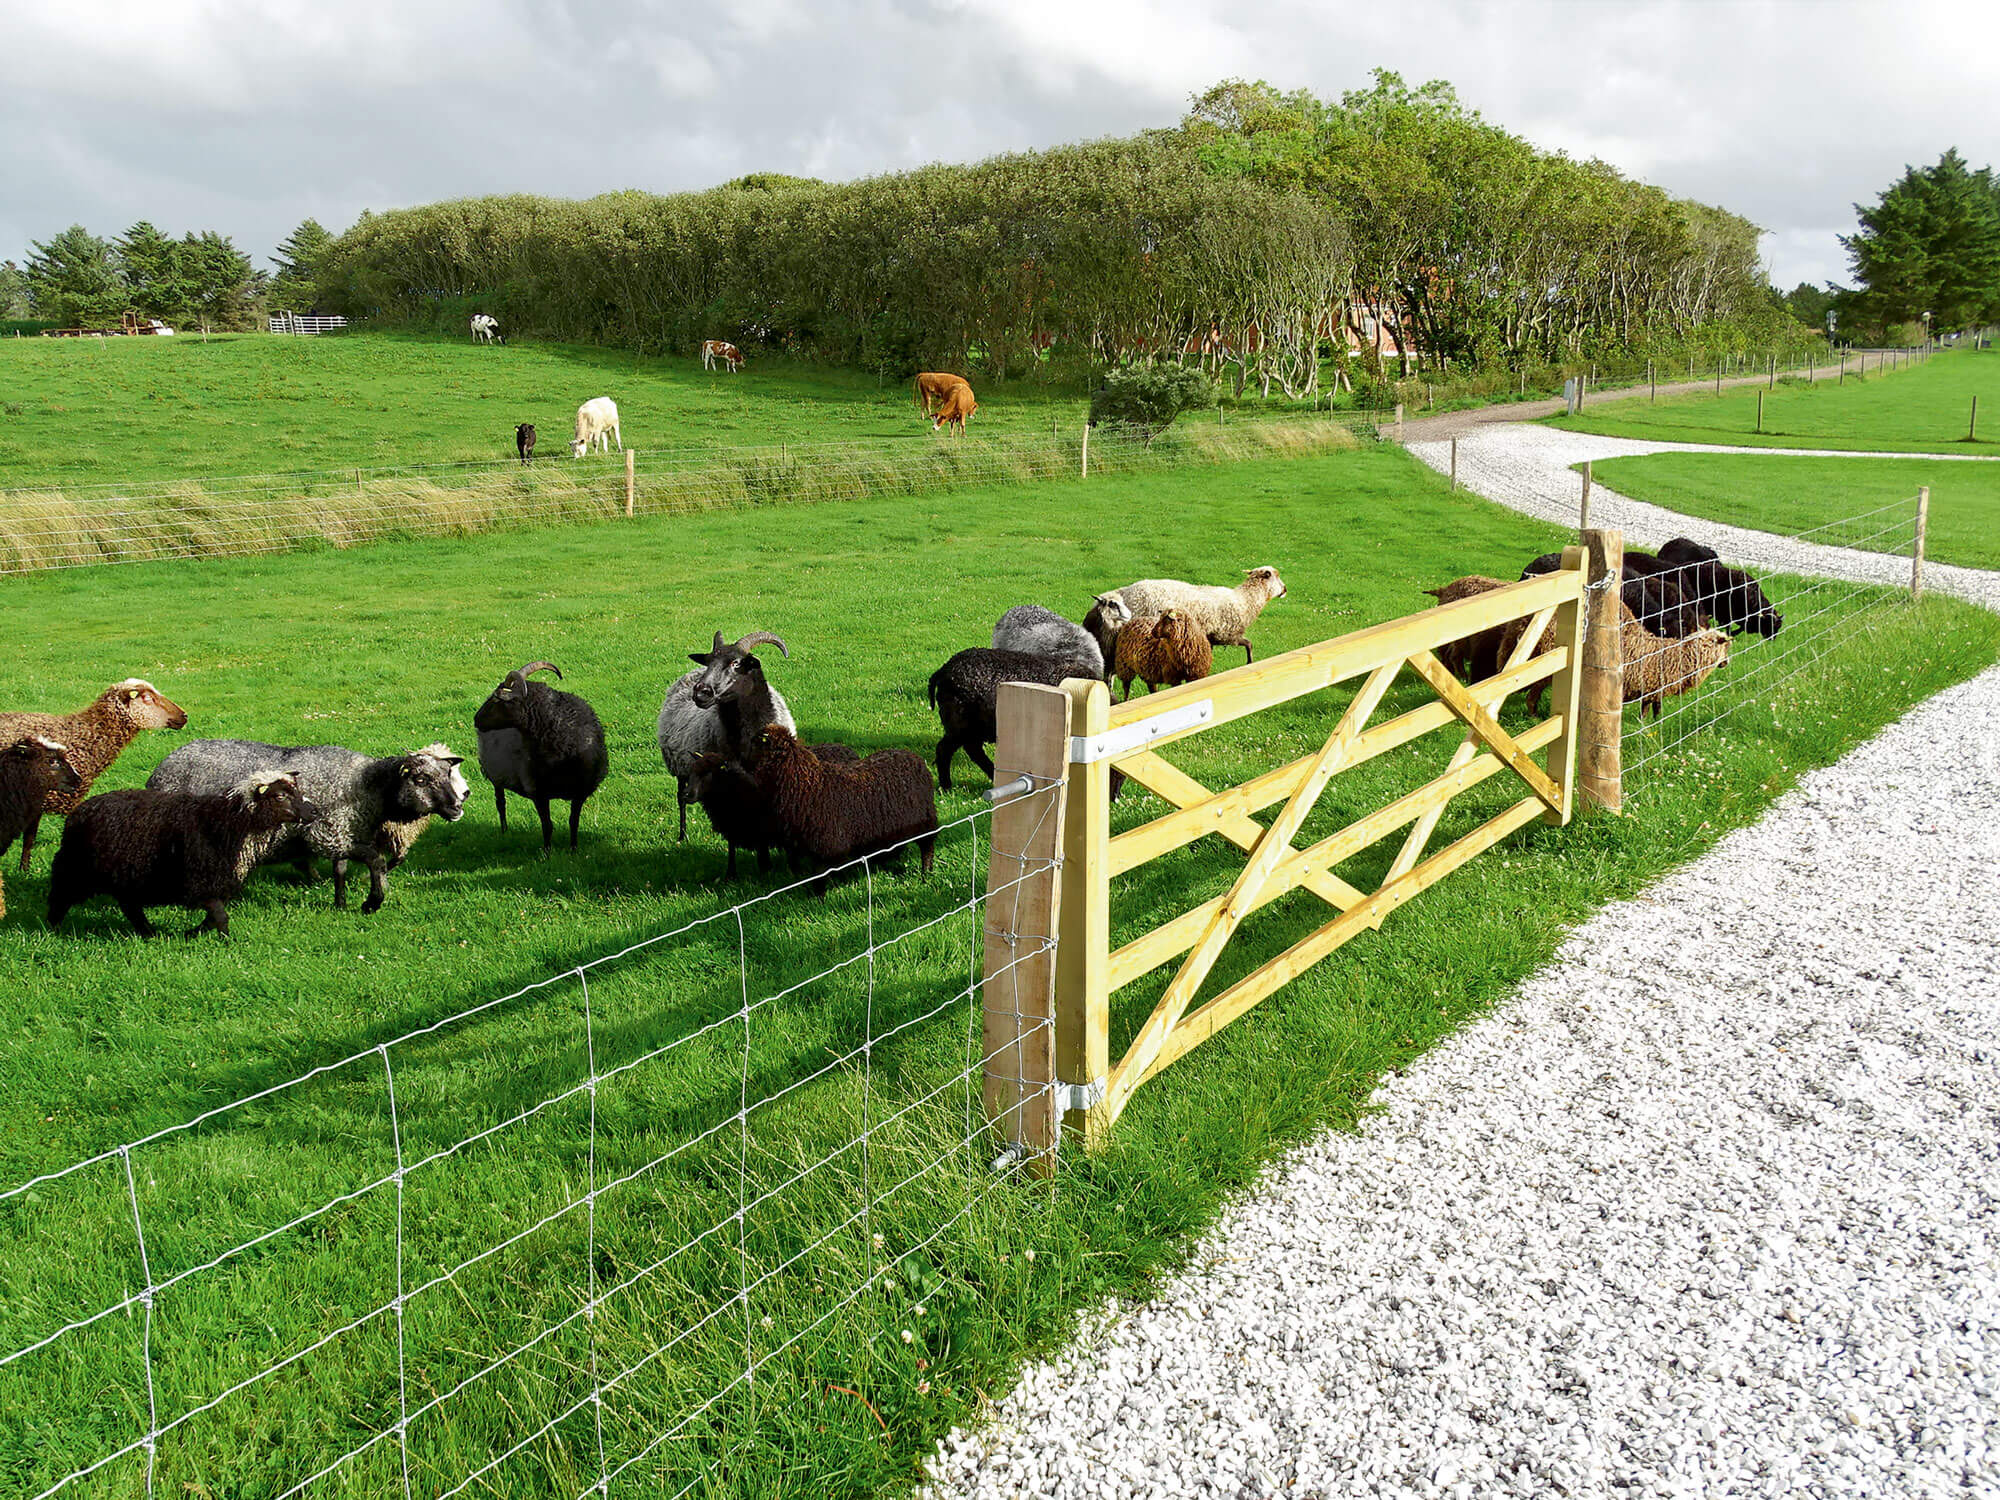 Op de voorgrond graast een kudde schapen achter een nethek. Op de achtergrond grazen enkele paarden in een aparte paddock.